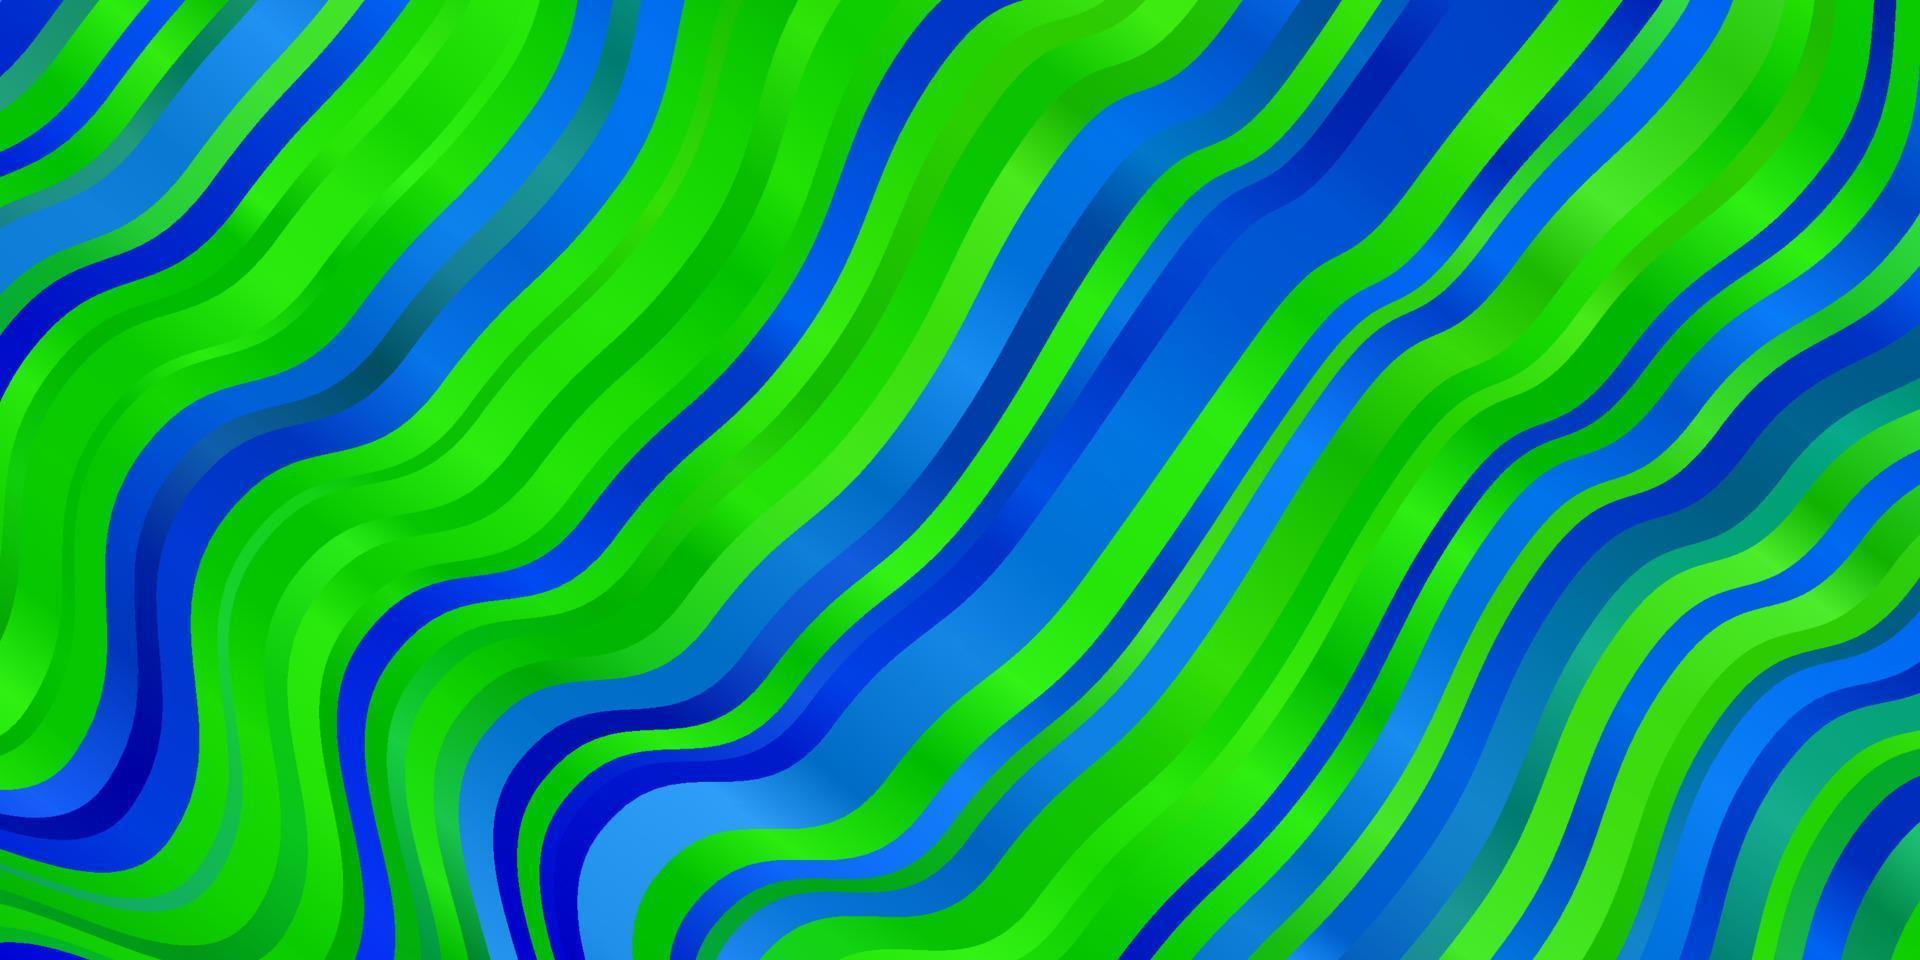 hellblauer, grüner Vektorhintergrund mit gekrümmten Linien. vektor